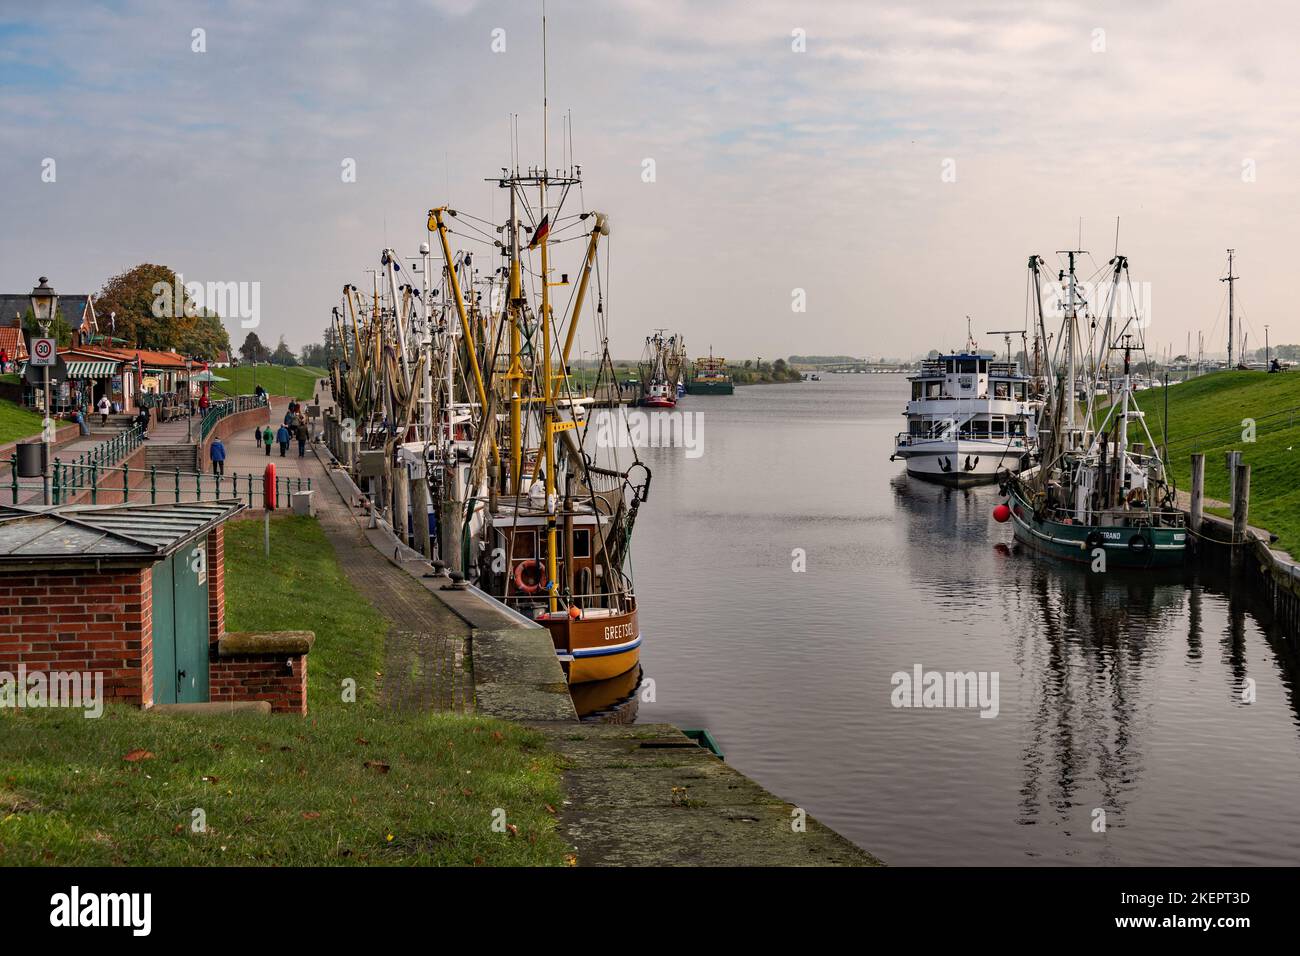 Hafen an der Nordsee Stock Photo